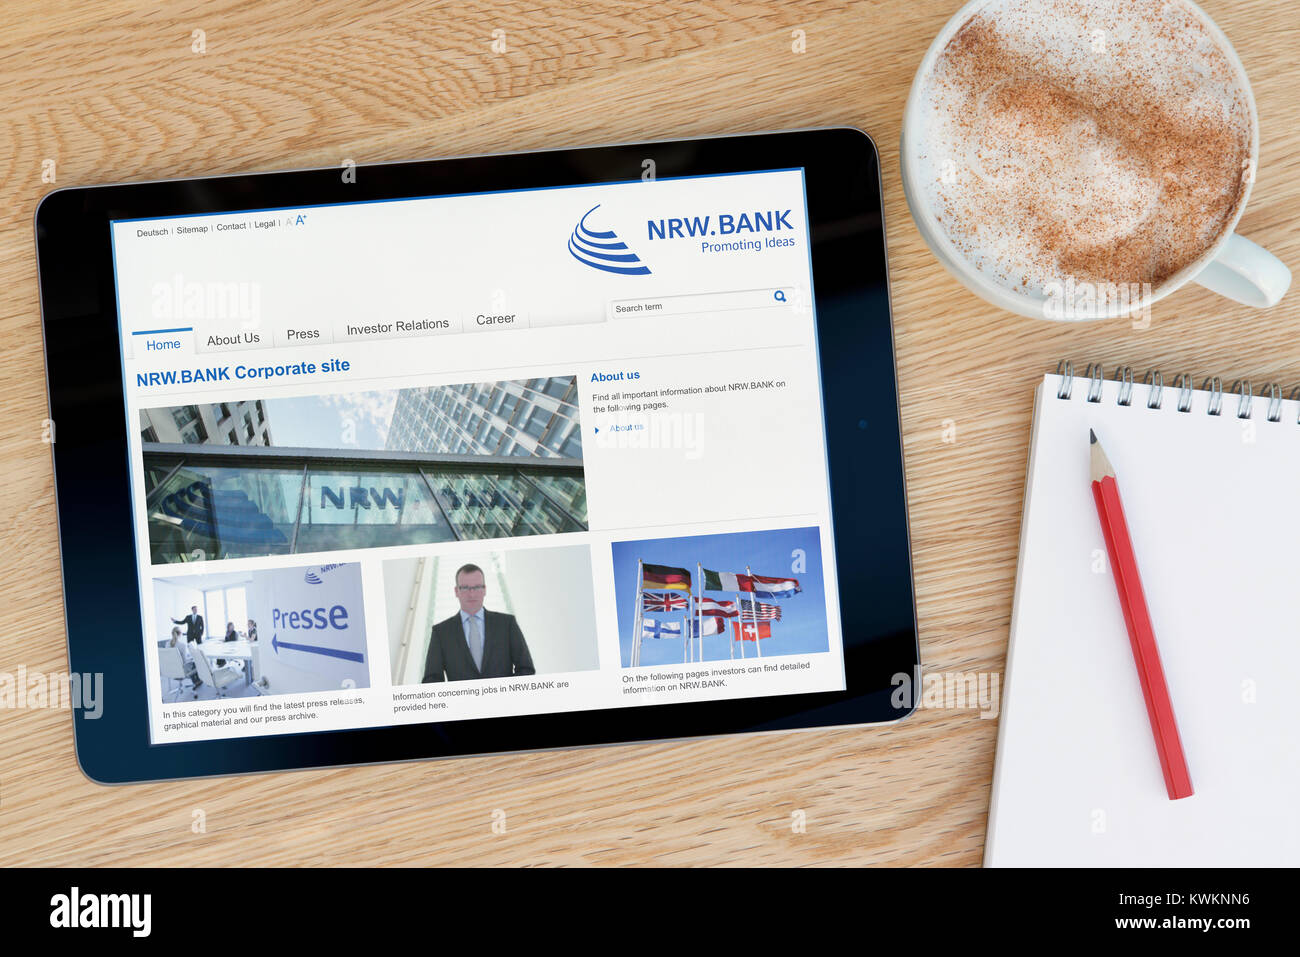 El NRW.BANK web sobre un dispositivo tablet iPad, descansando sobre una mesa de madera junto a un bloc de notas, lápiz y la taza de café (Editorial) Foto de stock